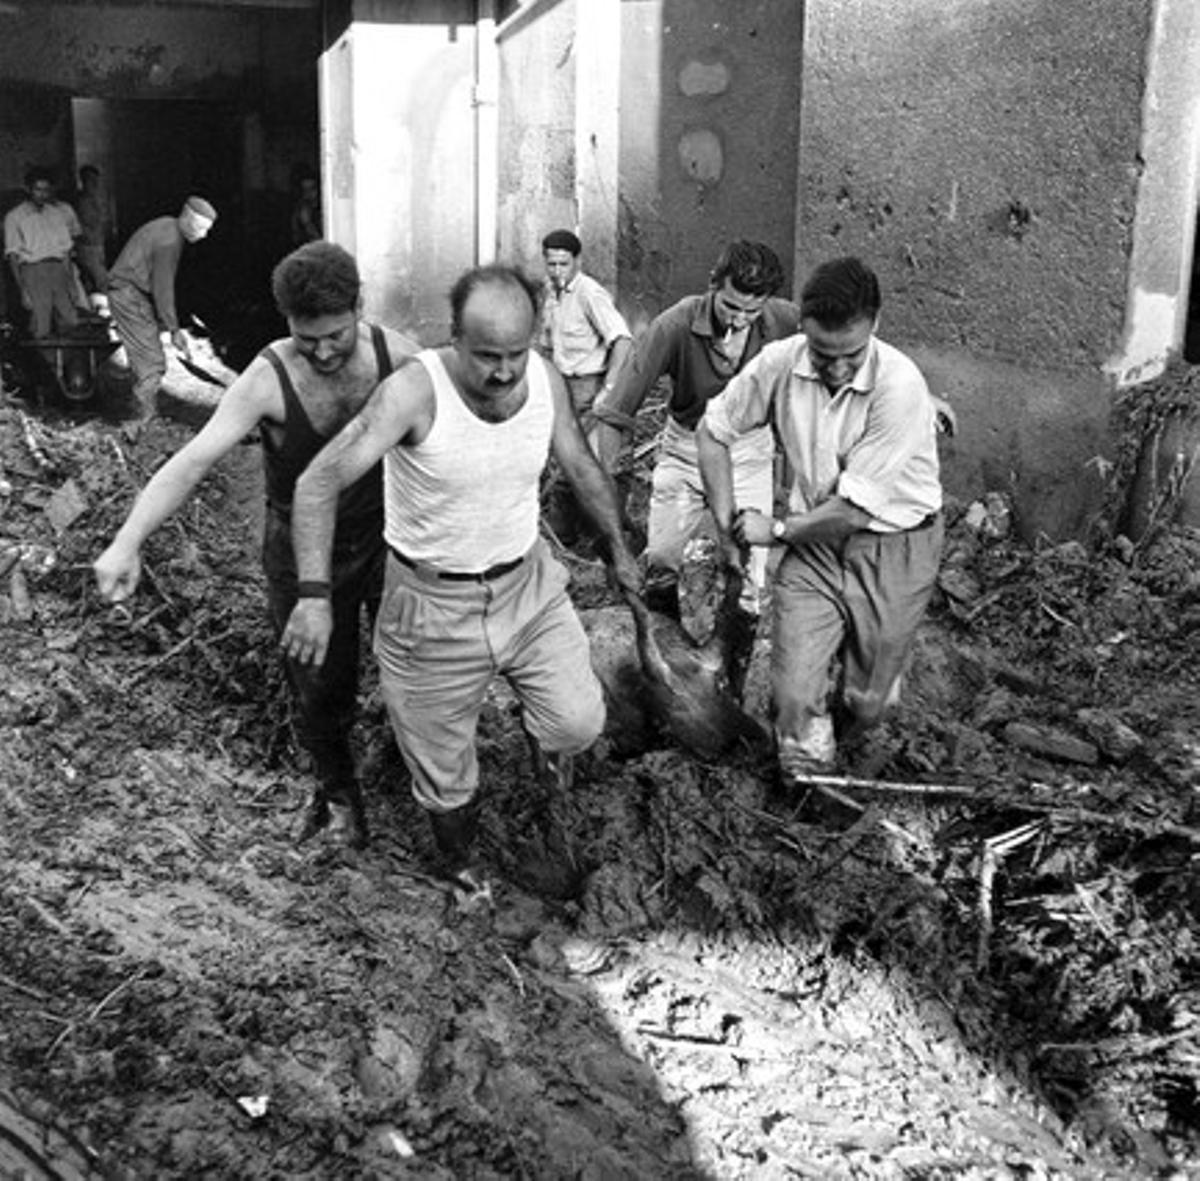 Quatre homes transporten un cap de bestiar mort en les inundacions desenterrat entre la runa.